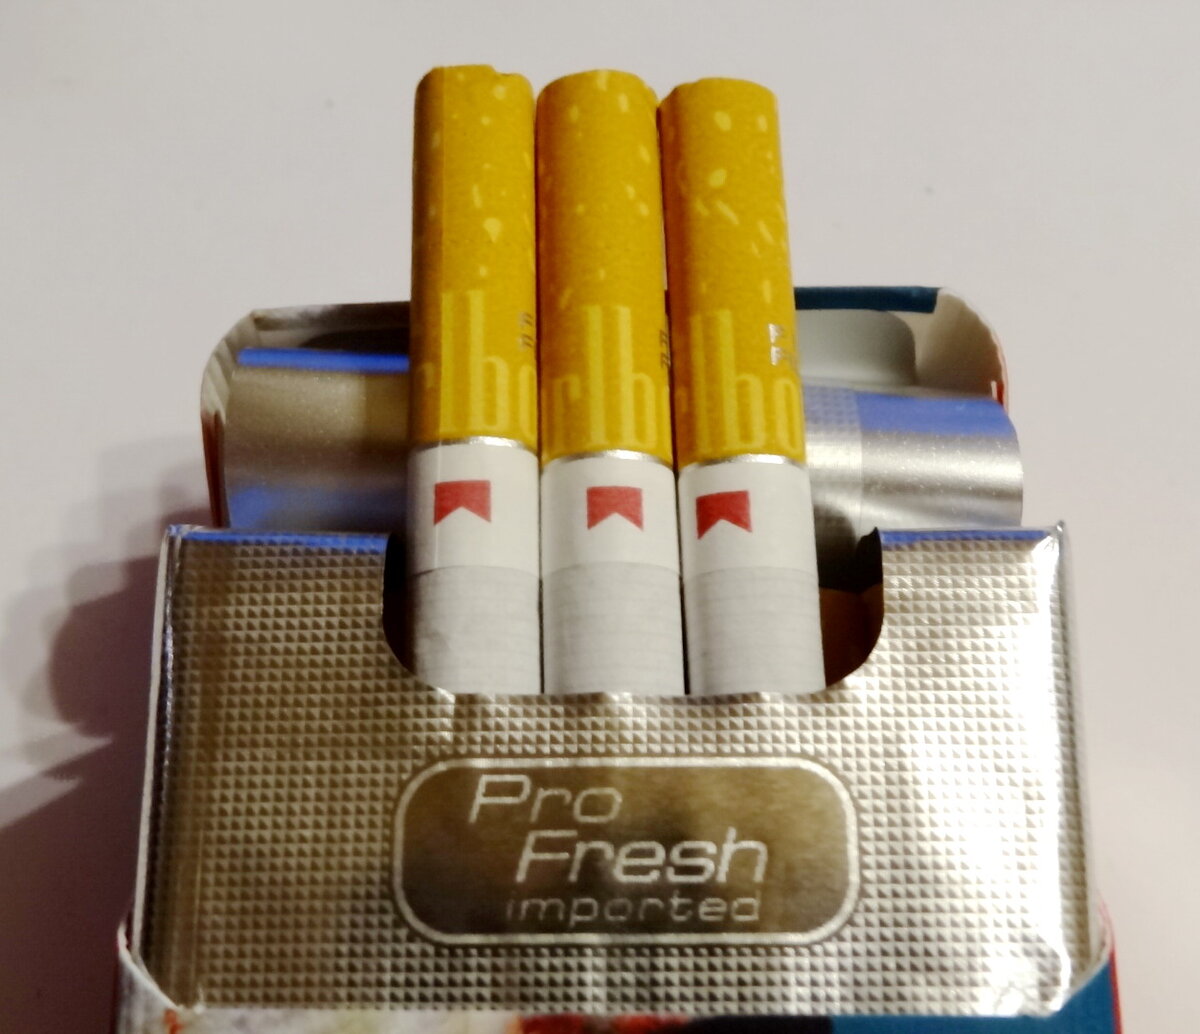 Steam flash сигареты фото 82